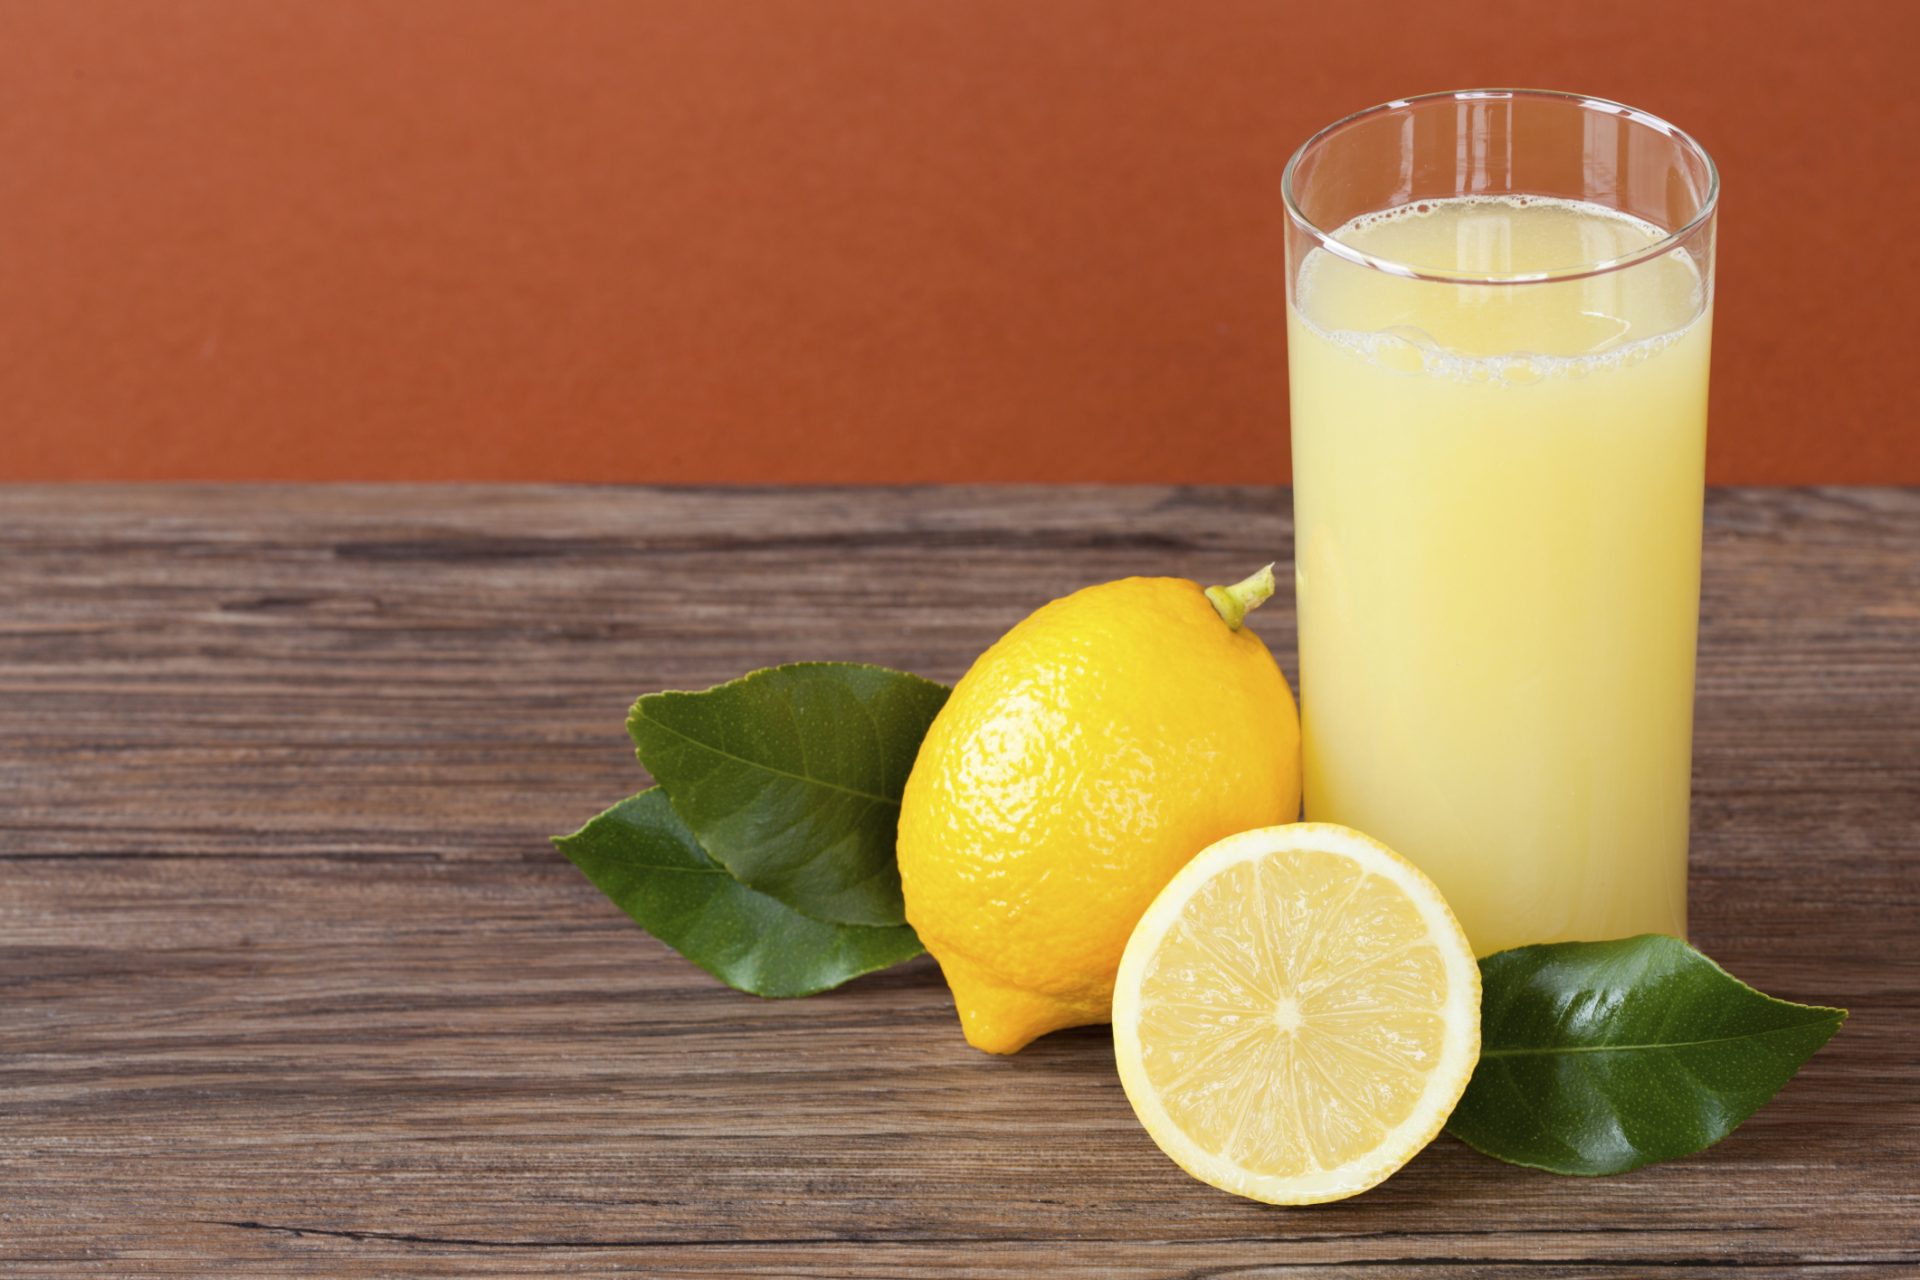 كوب واحد في الصباح يصنع المعجزات.. فوائد لا تعد ولا تحصى لشرب عصير الليمون على الريق